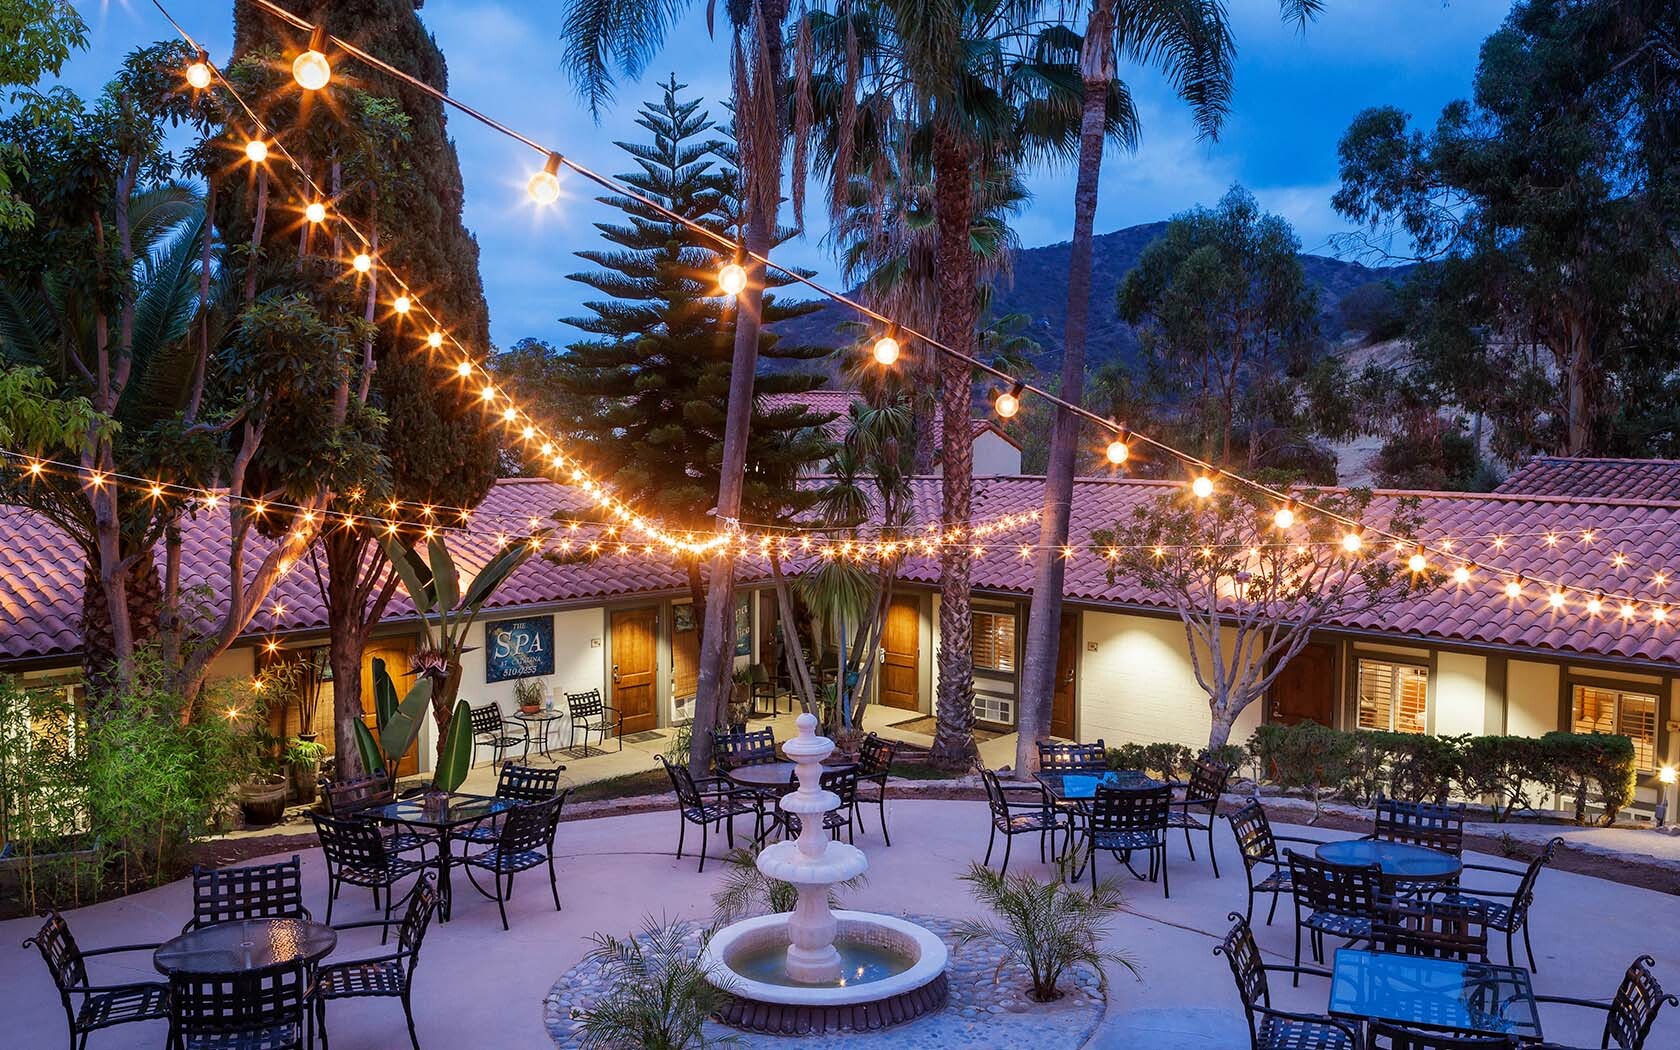 Photo of Catalina Canyon Inn, Avalon, CA